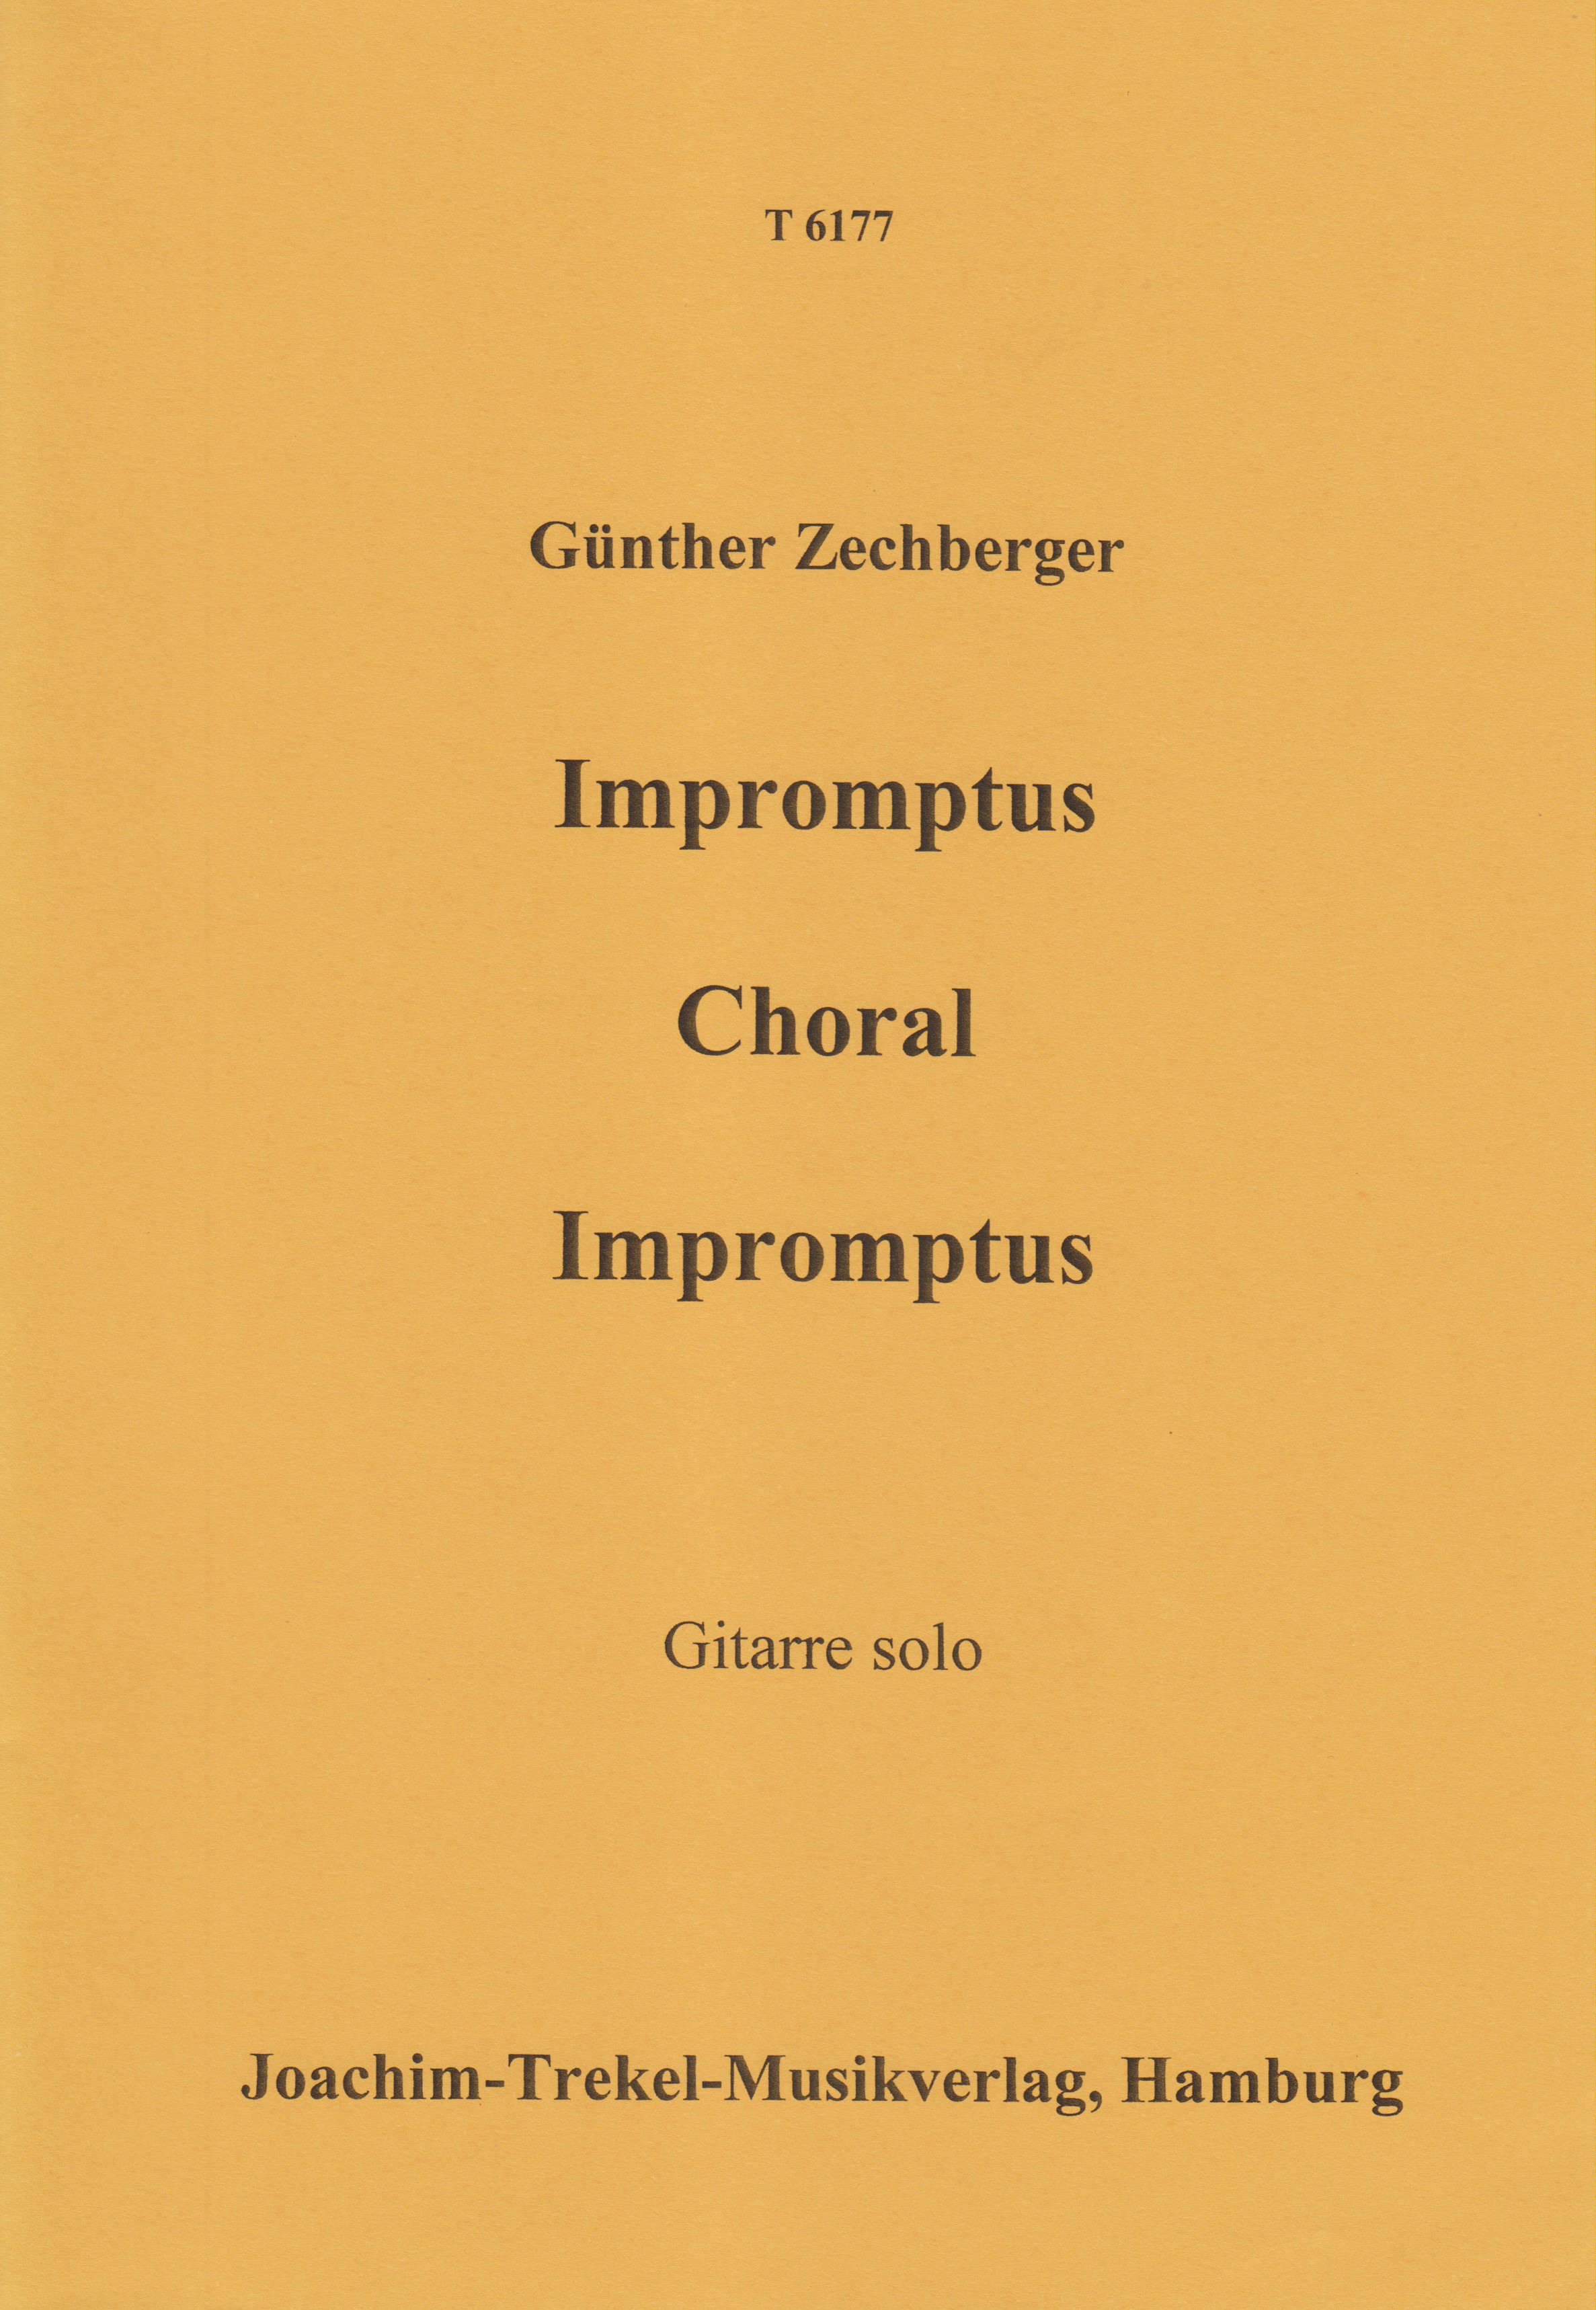 Impromptus - Choral - Impromptus